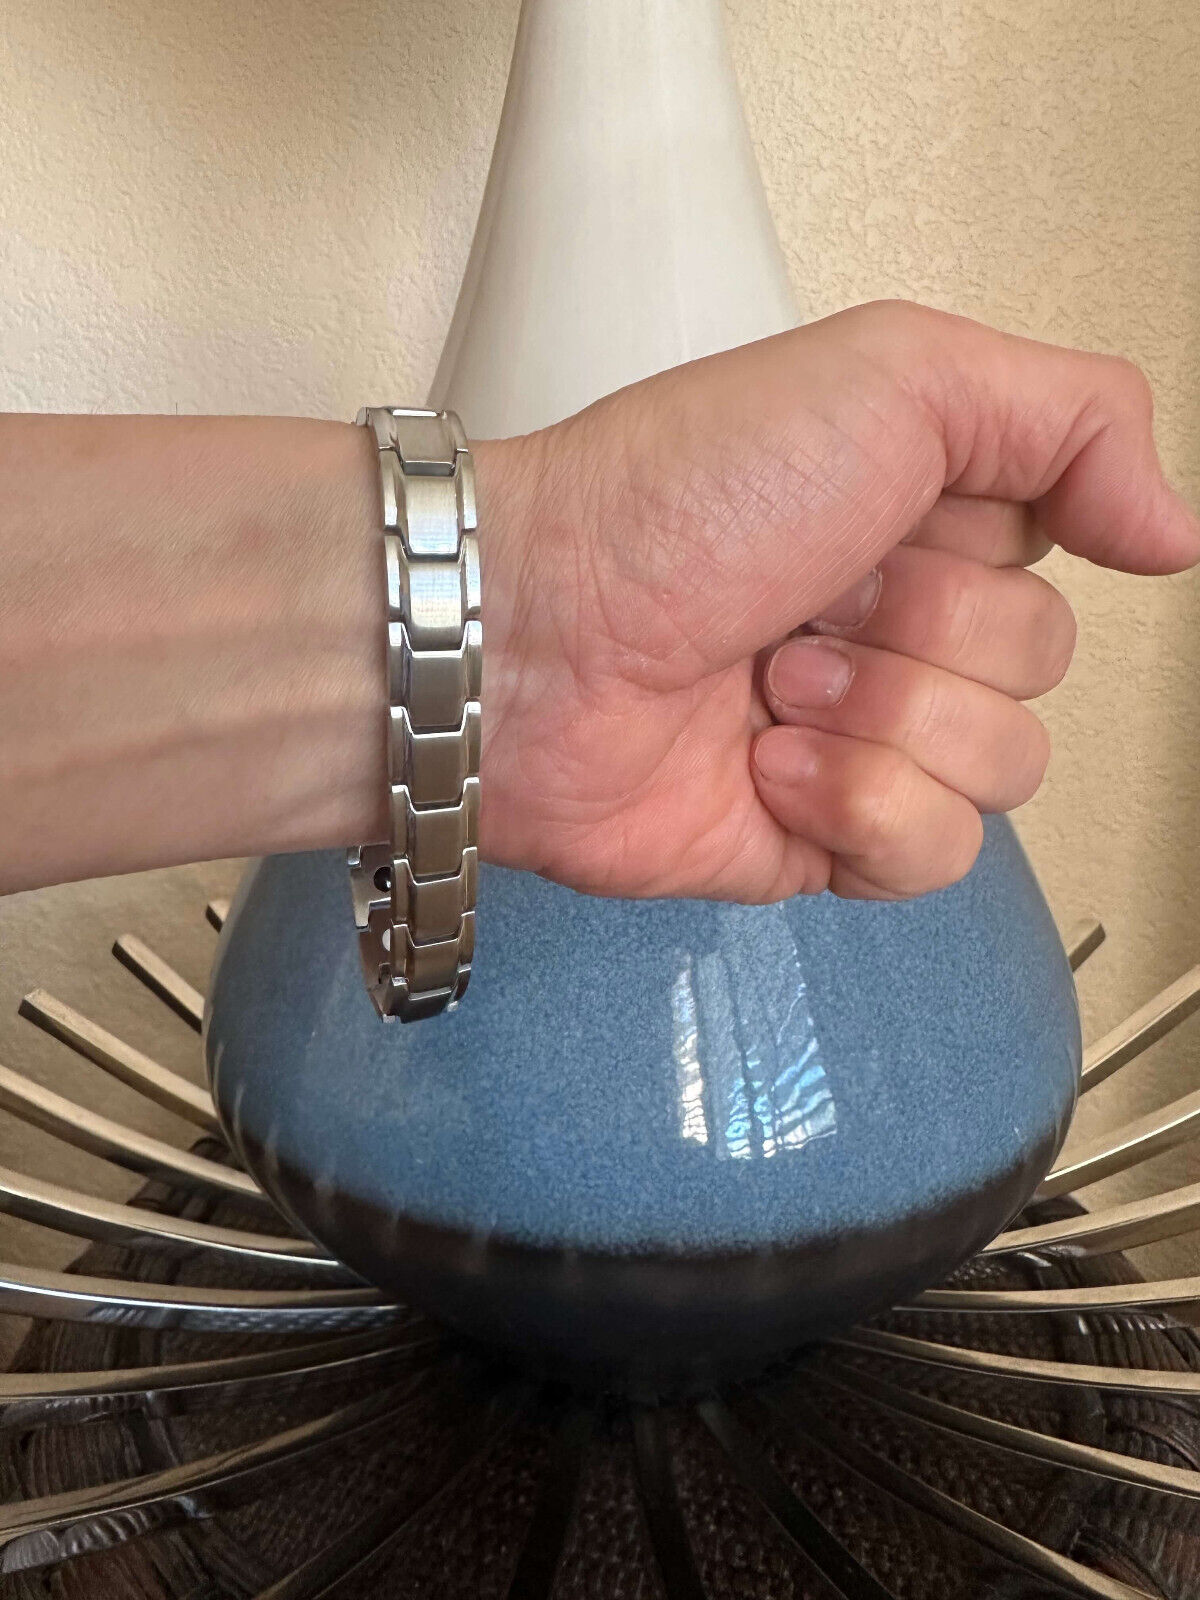 Amazing Magnetic Bracelet 4 Elements Restore Energy Balance Power Christmas Gift Unbranded - фотография #7